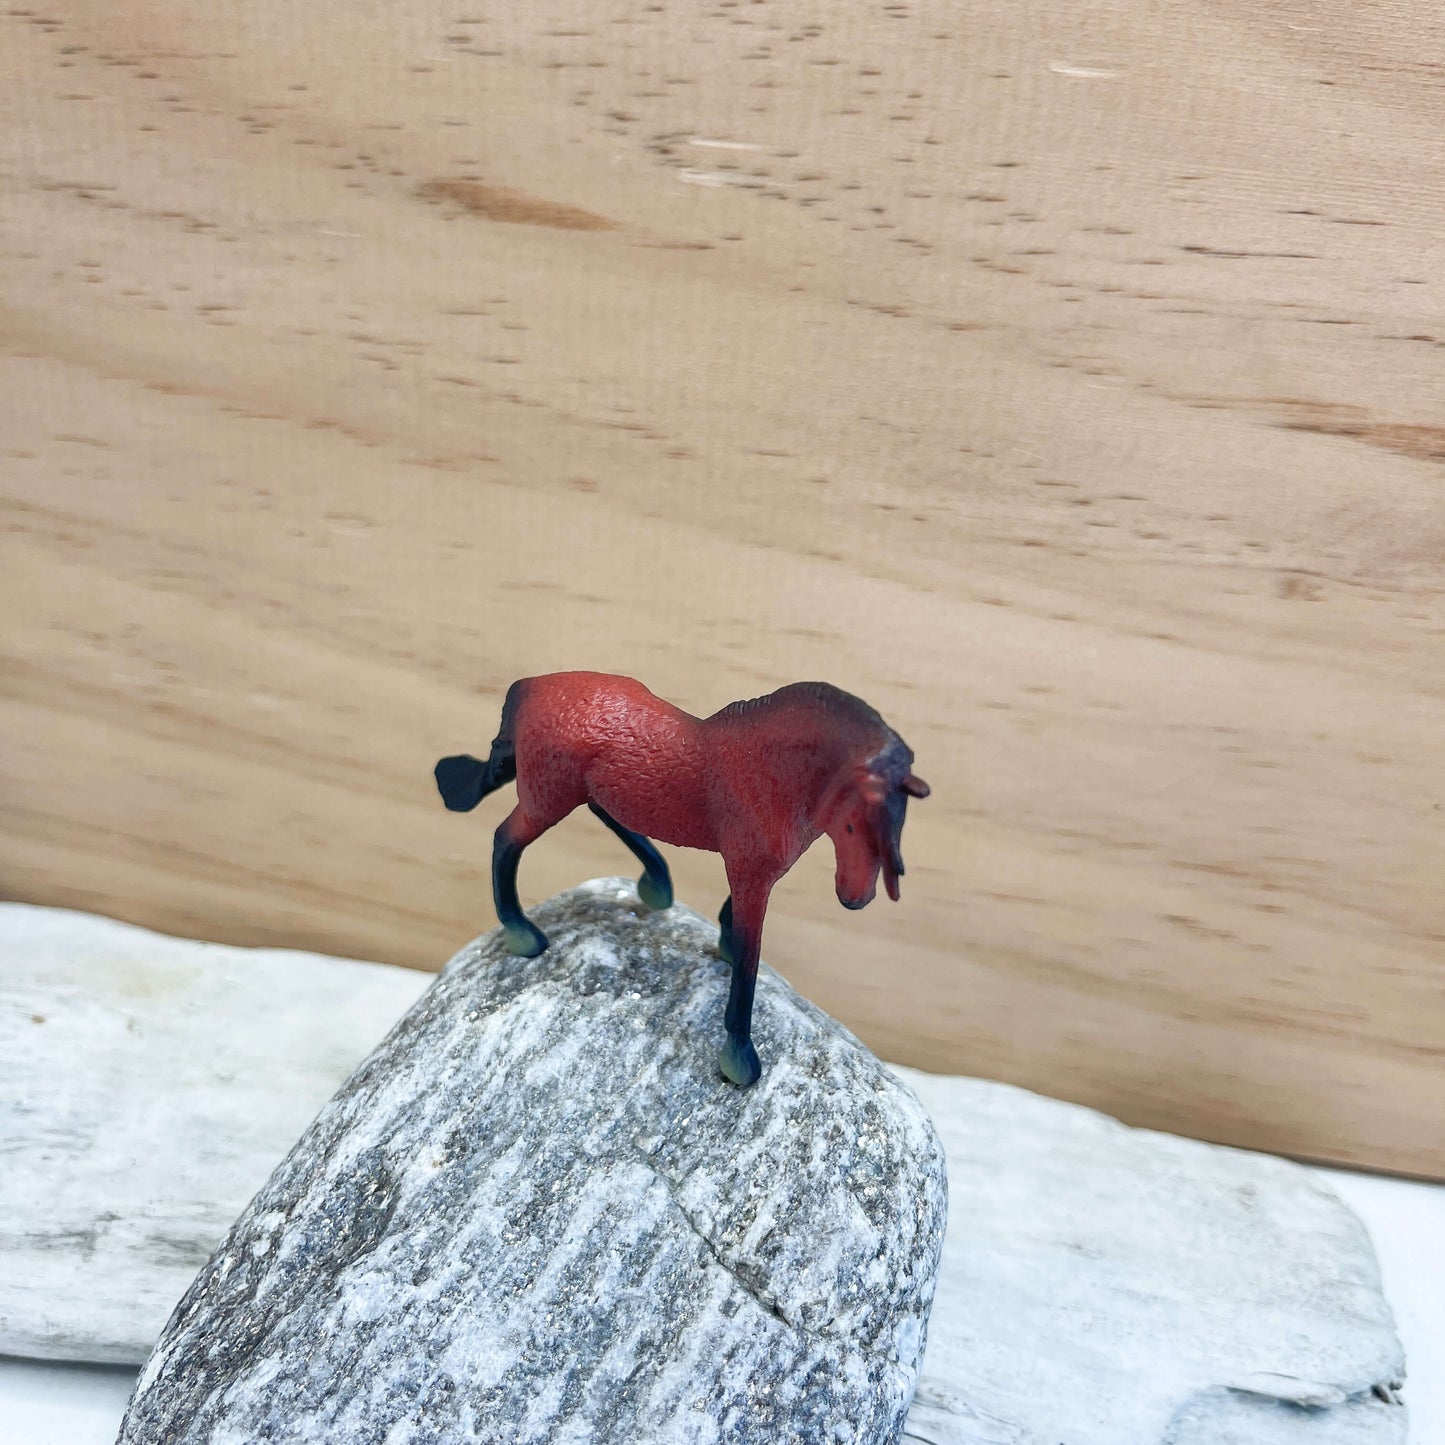 Mini horse figurines.